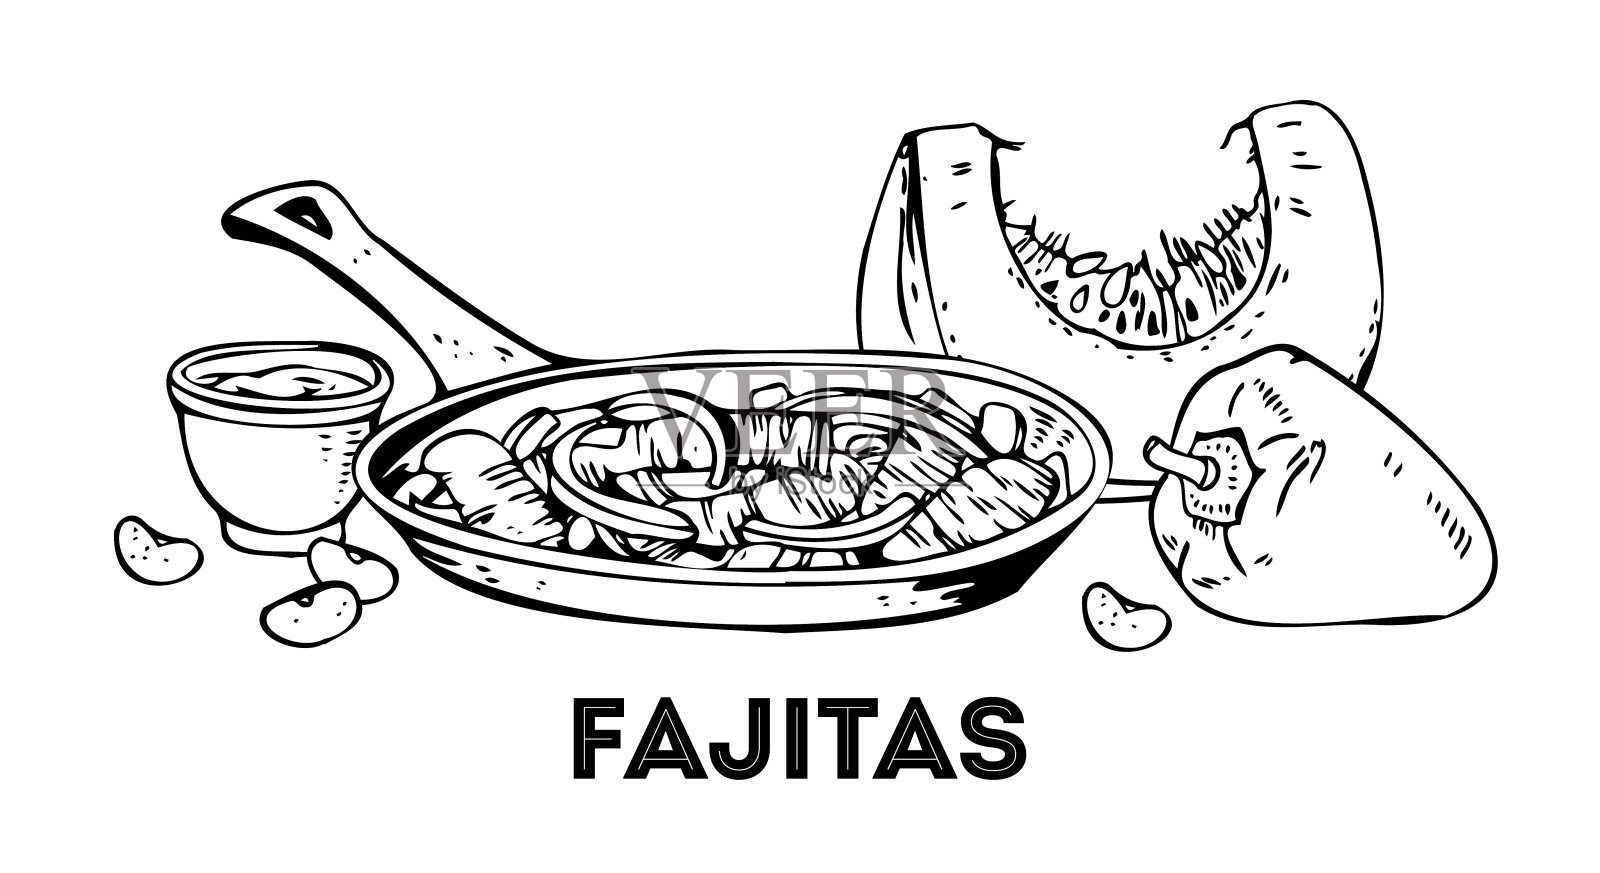 墨西哥烙饼和蔬菜的组合。手绘轮廓矢量草图插图。白底黑字插画图片素材